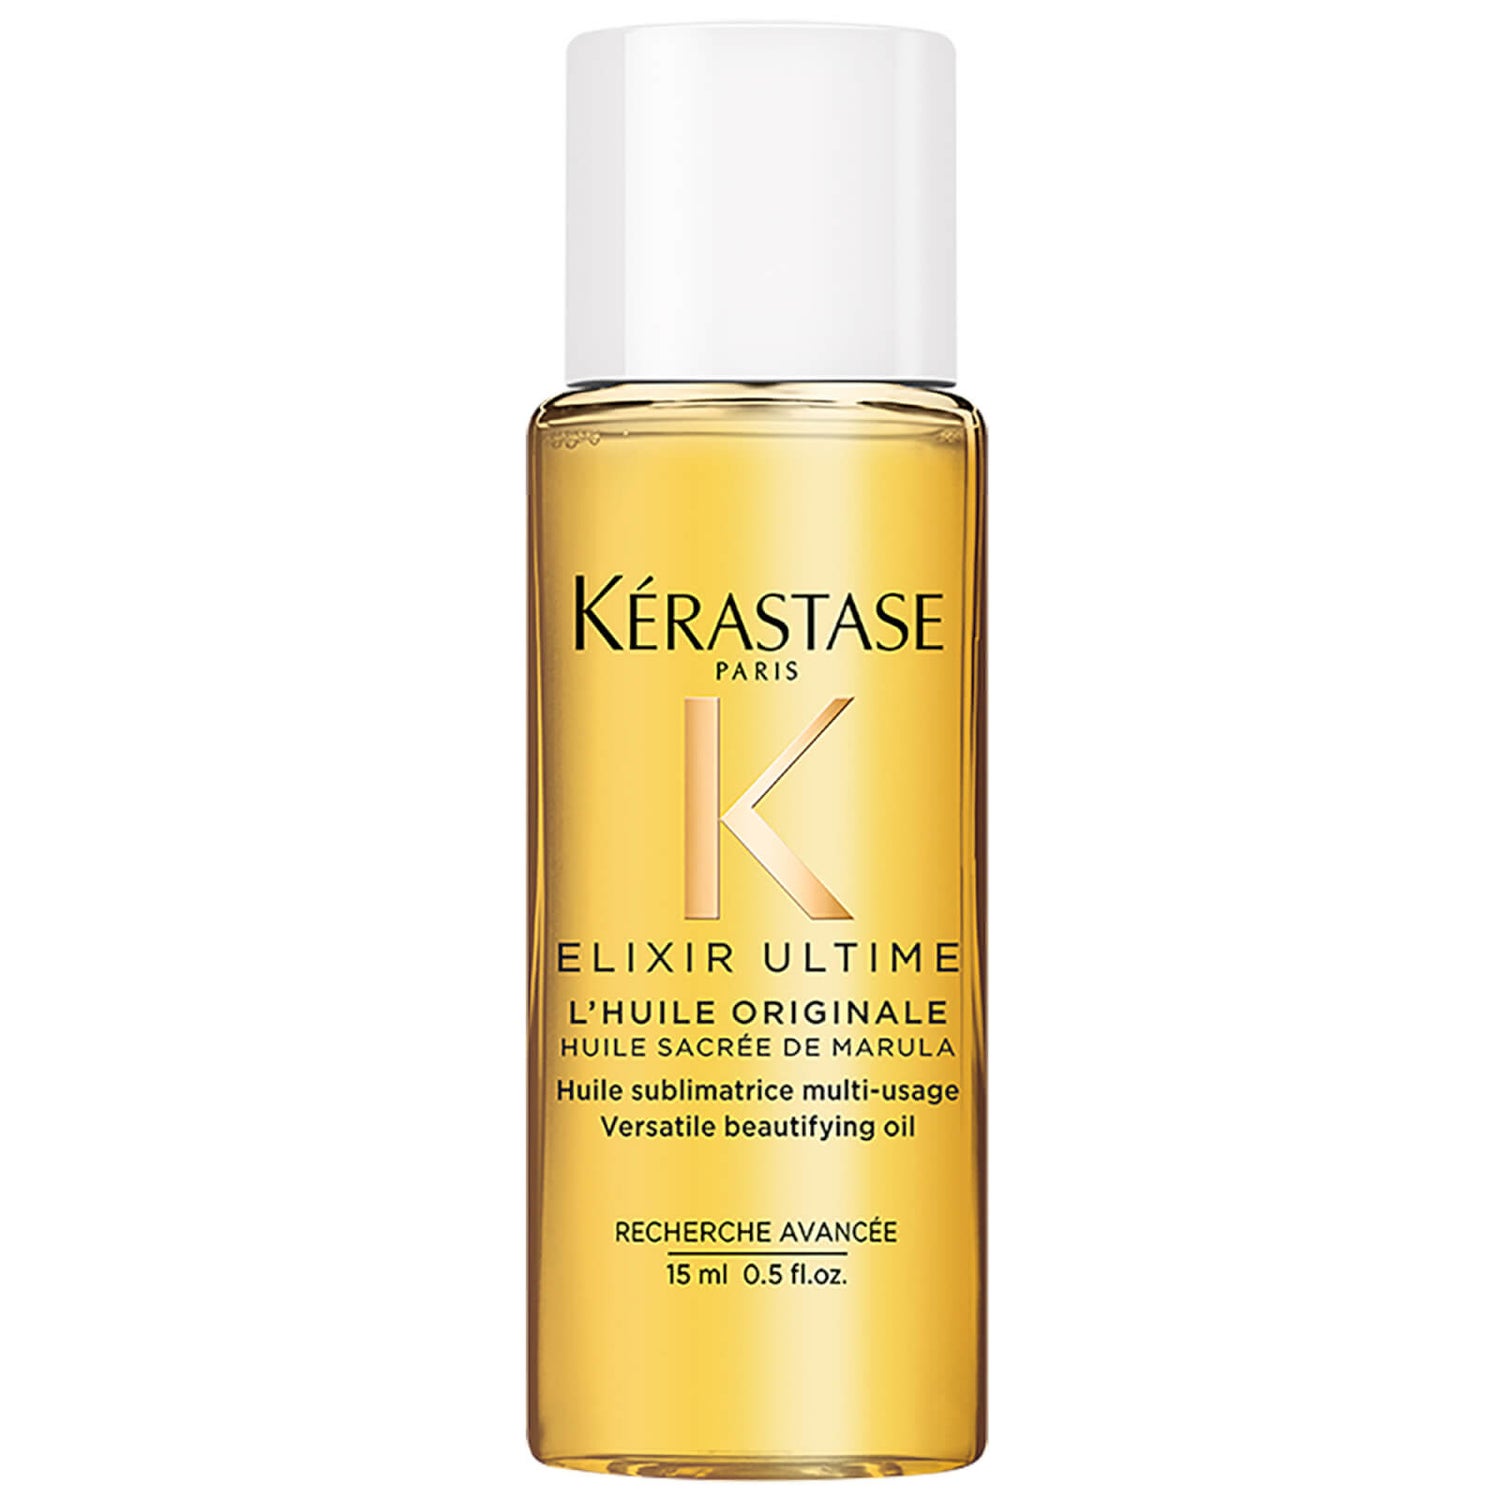 Kérastase Elixir Ultime Original Hair Oil 15ml